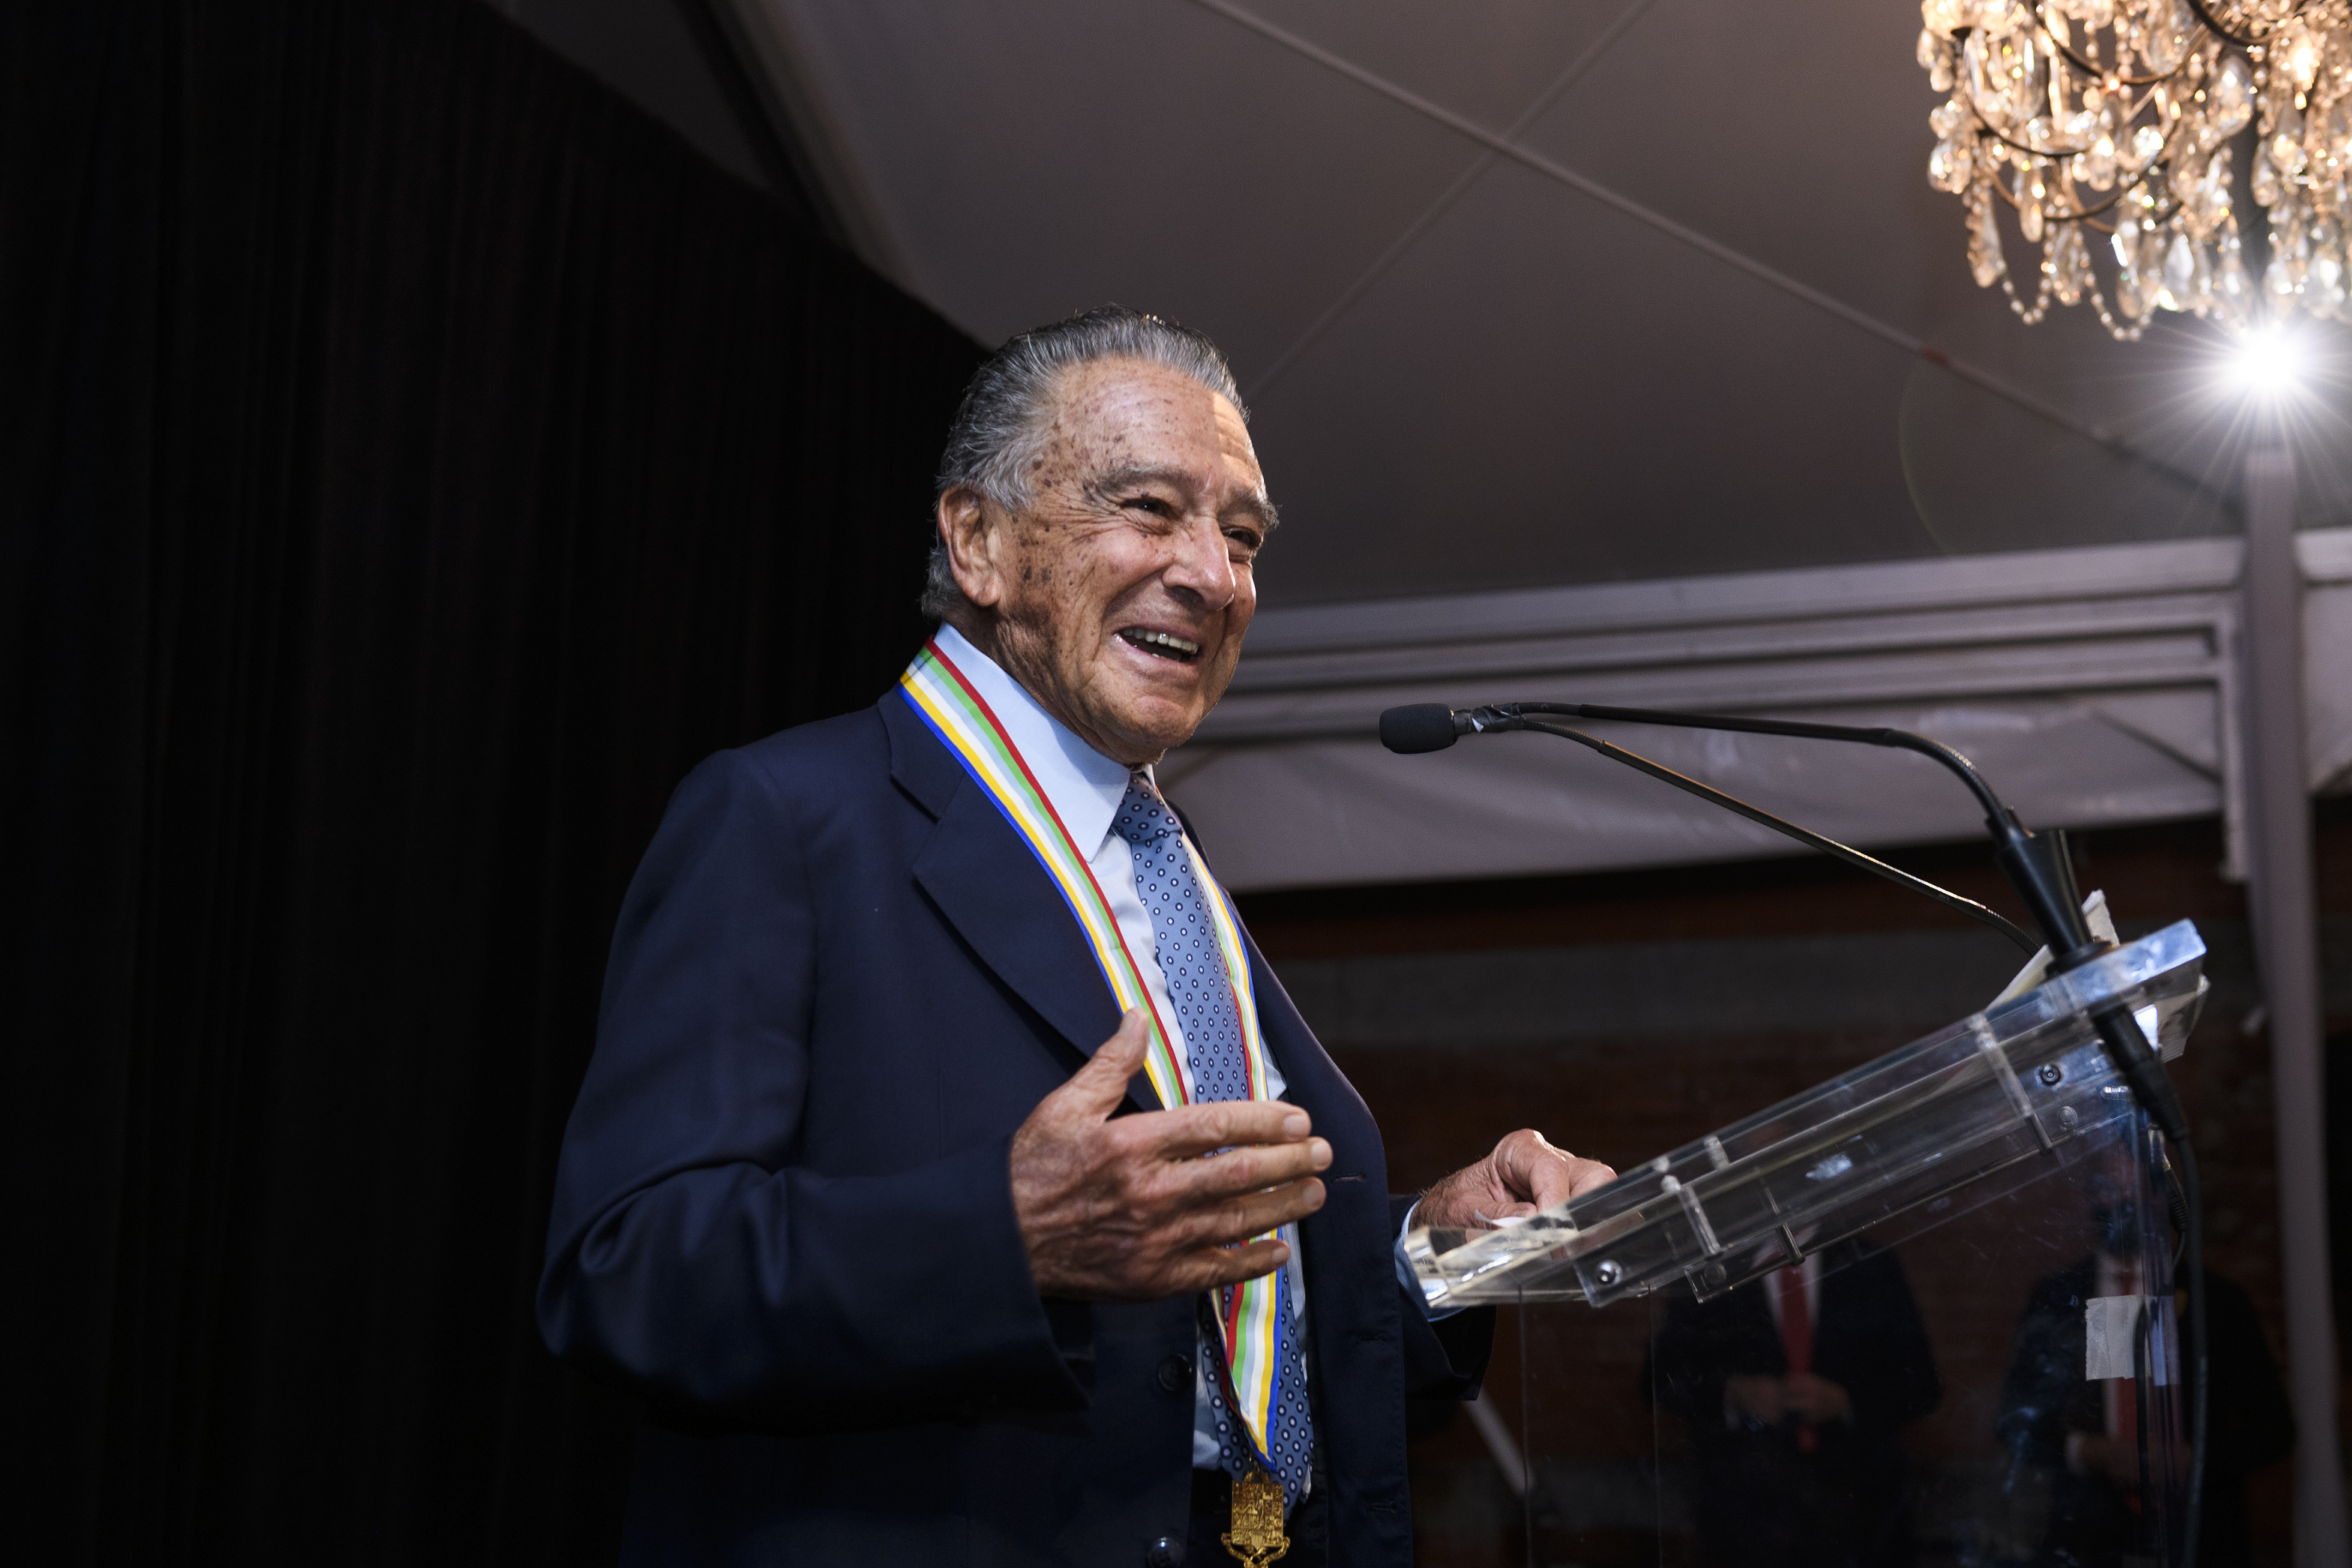 Eduardo Eurnekian, uno de los galardonados por la Americas Society en la noche de Nueva York, pronuncia su discurso de agradecimiento (Paula Abreu Pita/Roey Yohai Photography)